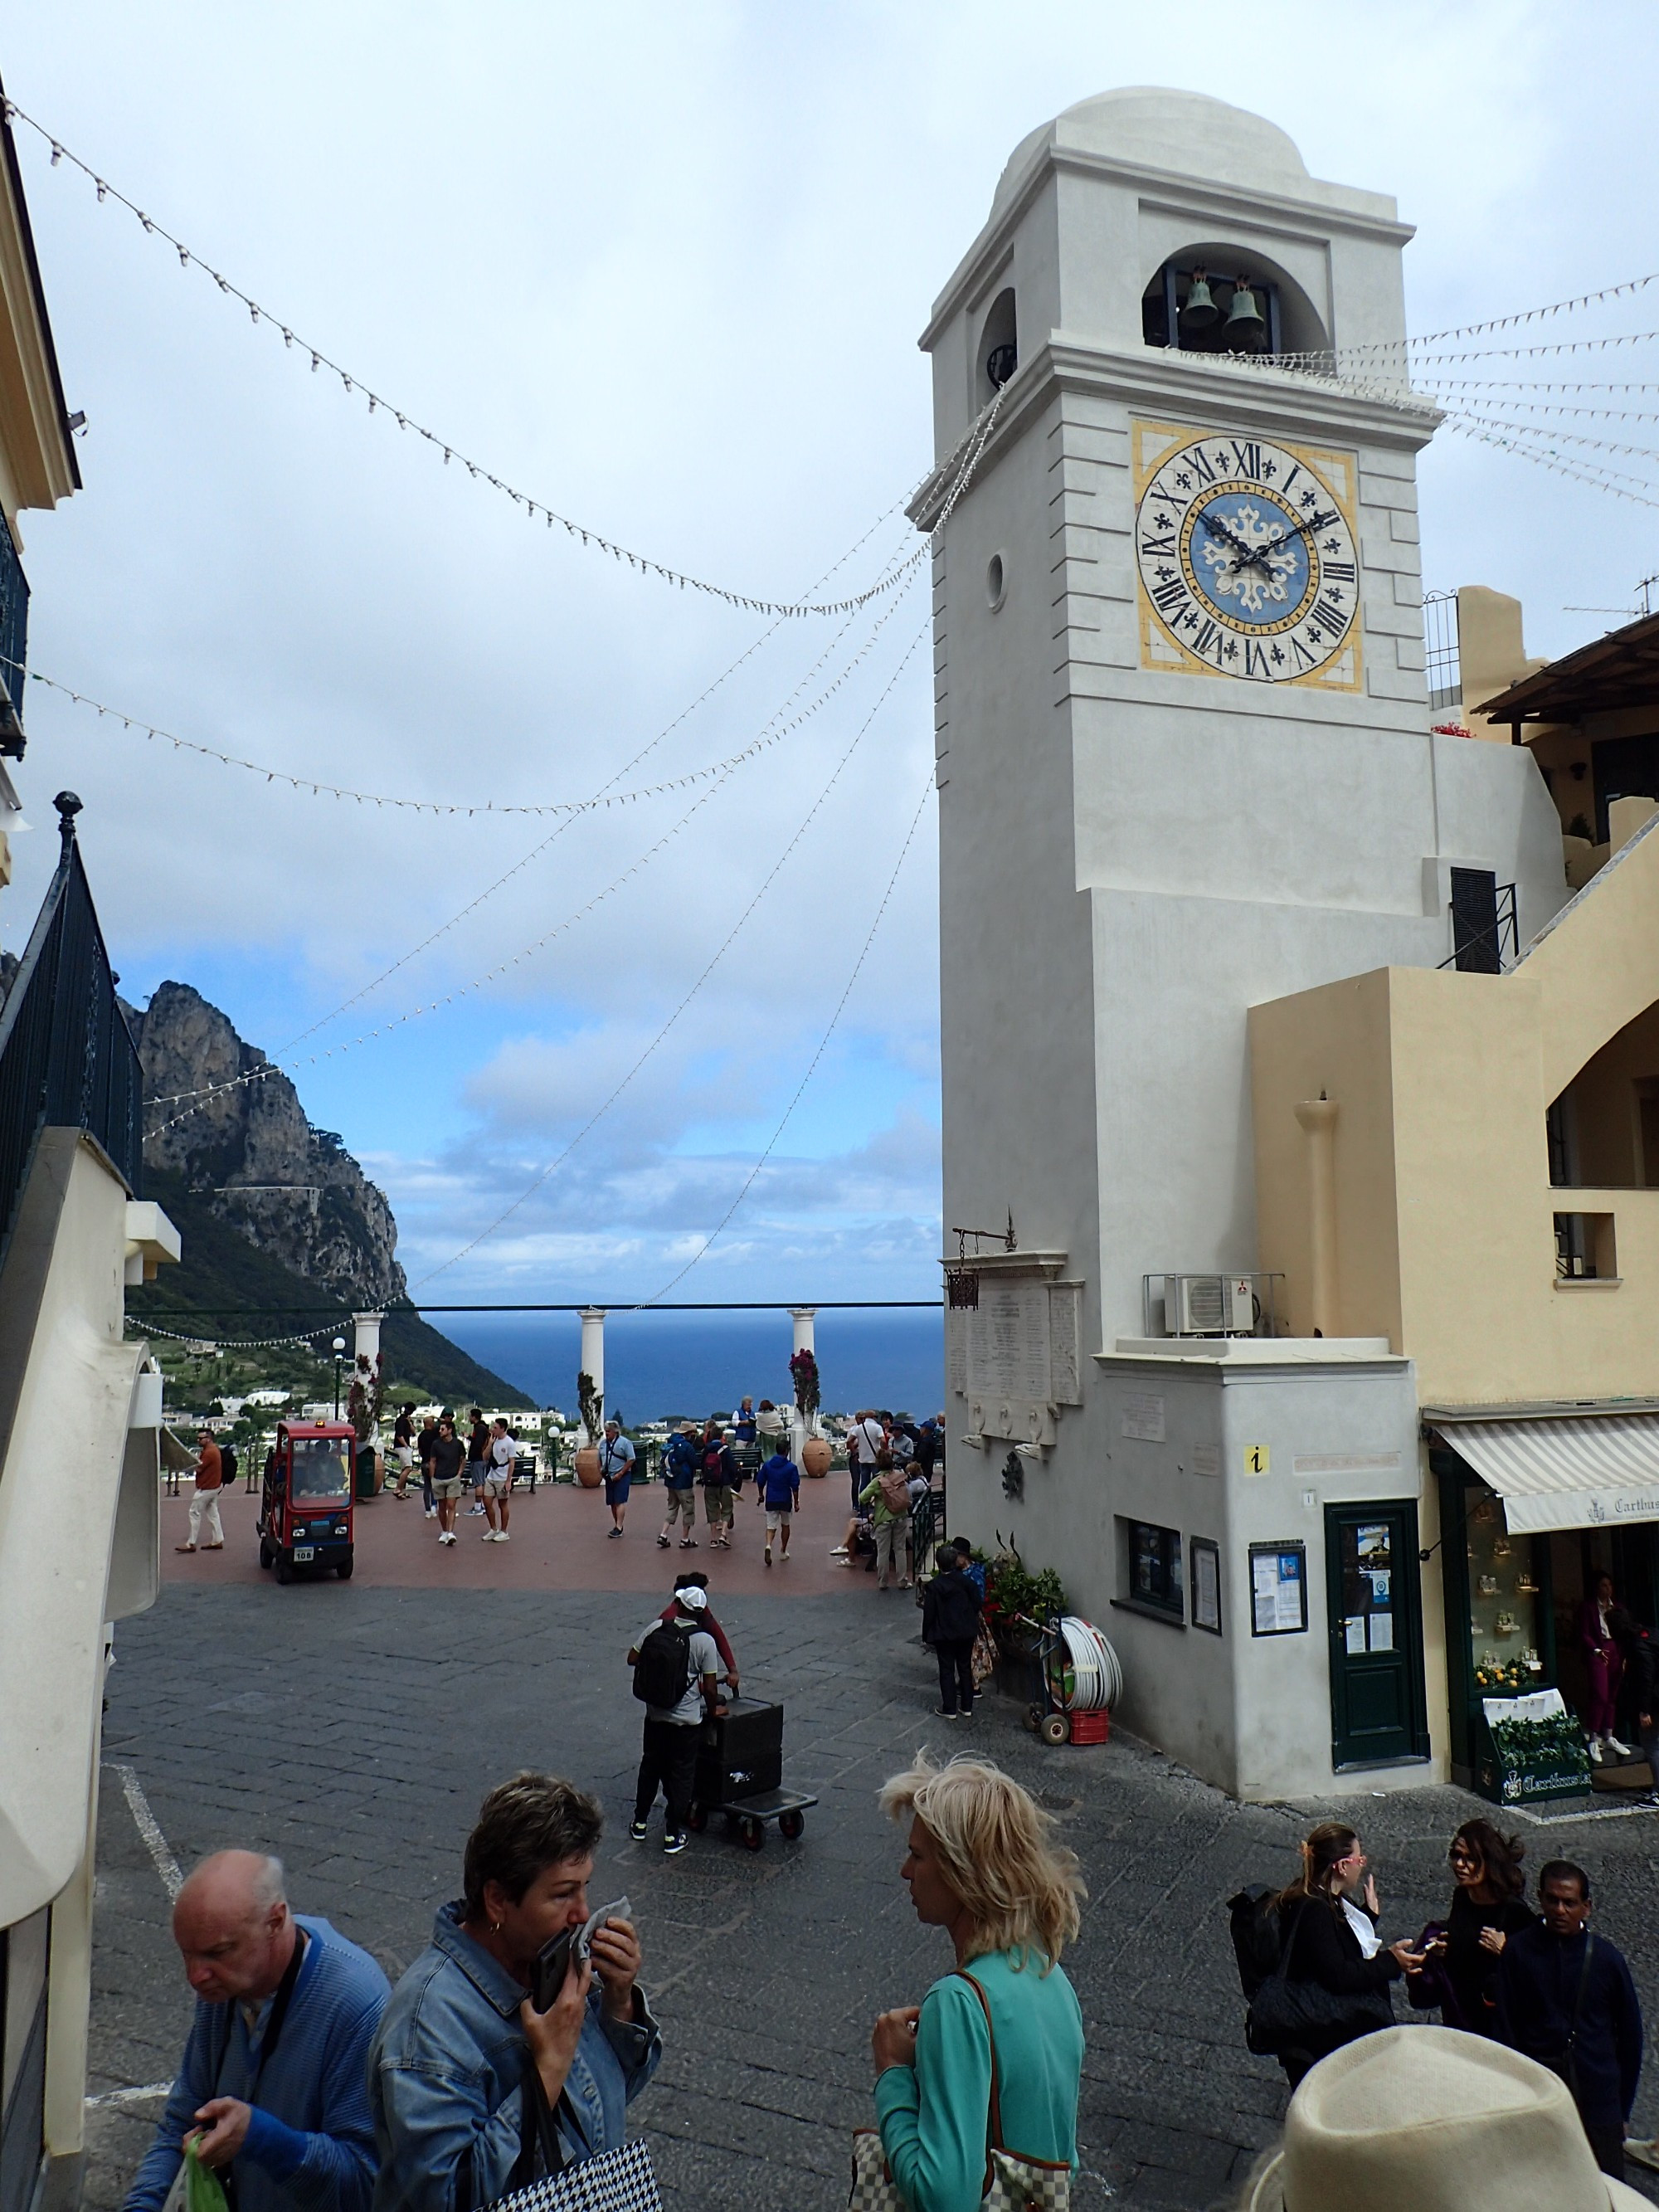 Capri Clock Tower, Italy